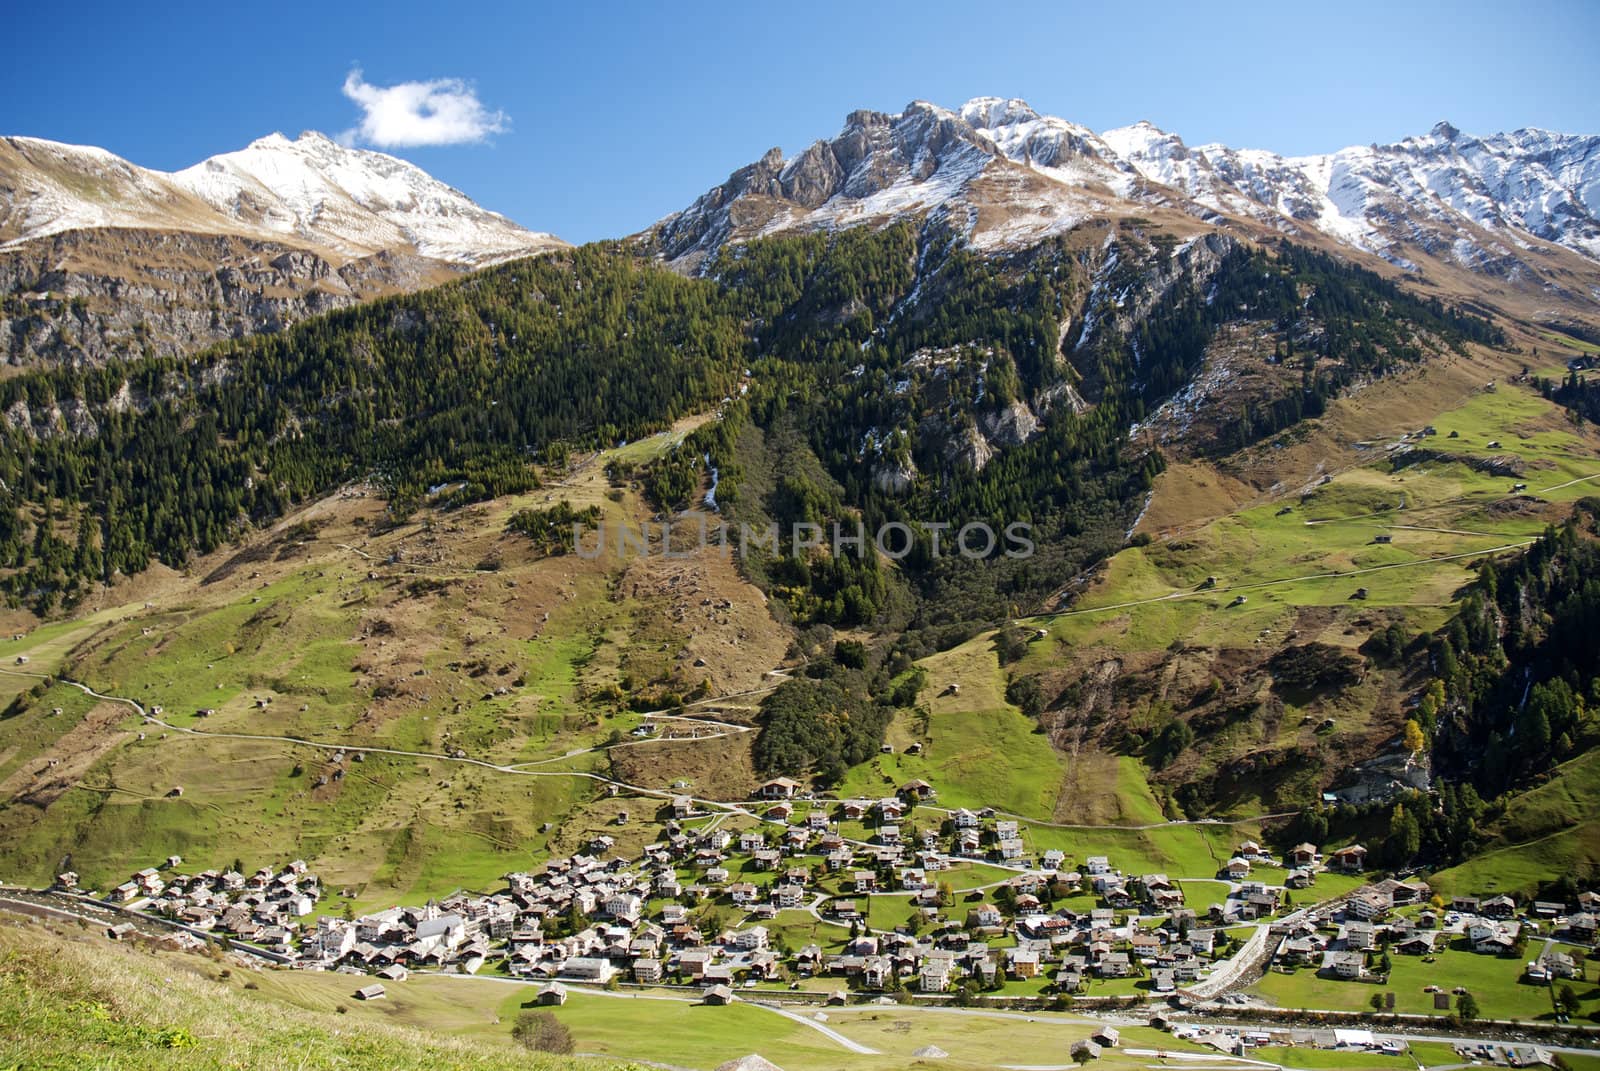 vals village in switzerland alps with alpine mountain landscape